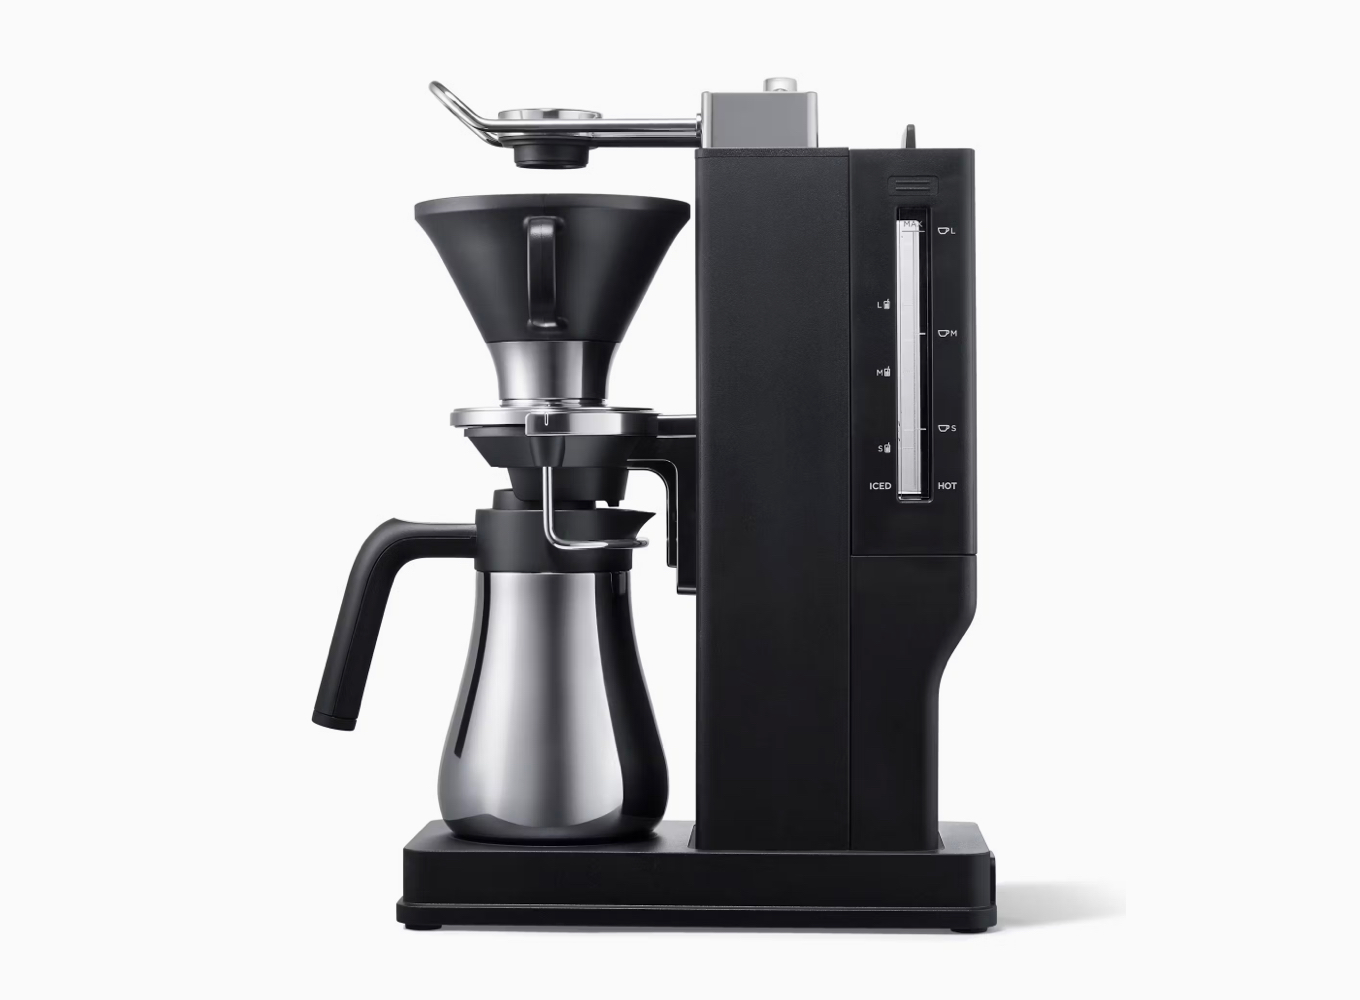 THE BREW COFFE MACHINE